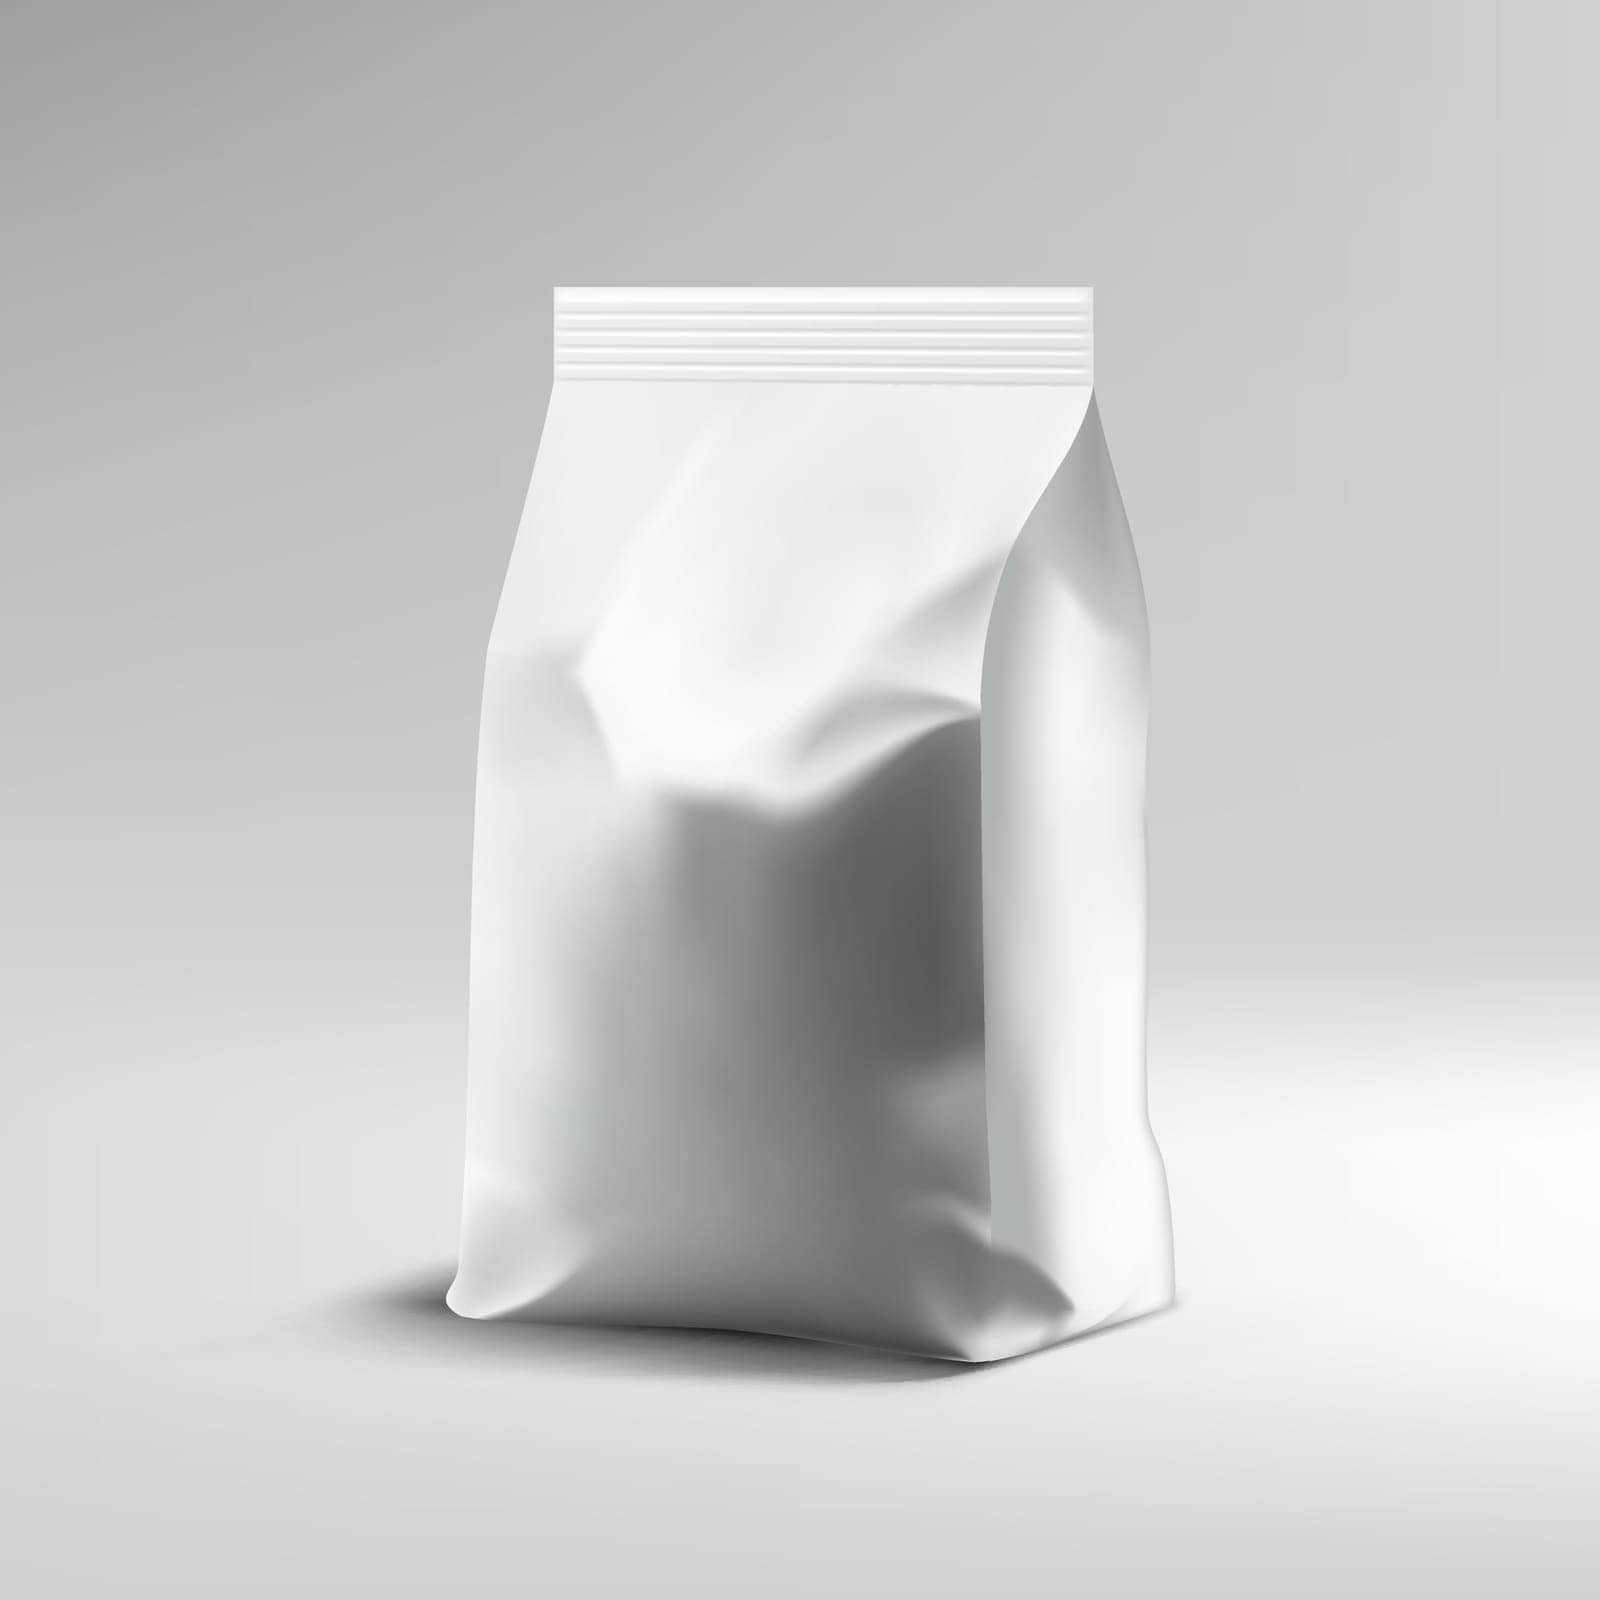 White Clear Foil Snack Sachet Bag Packaging. EPS10 Vector